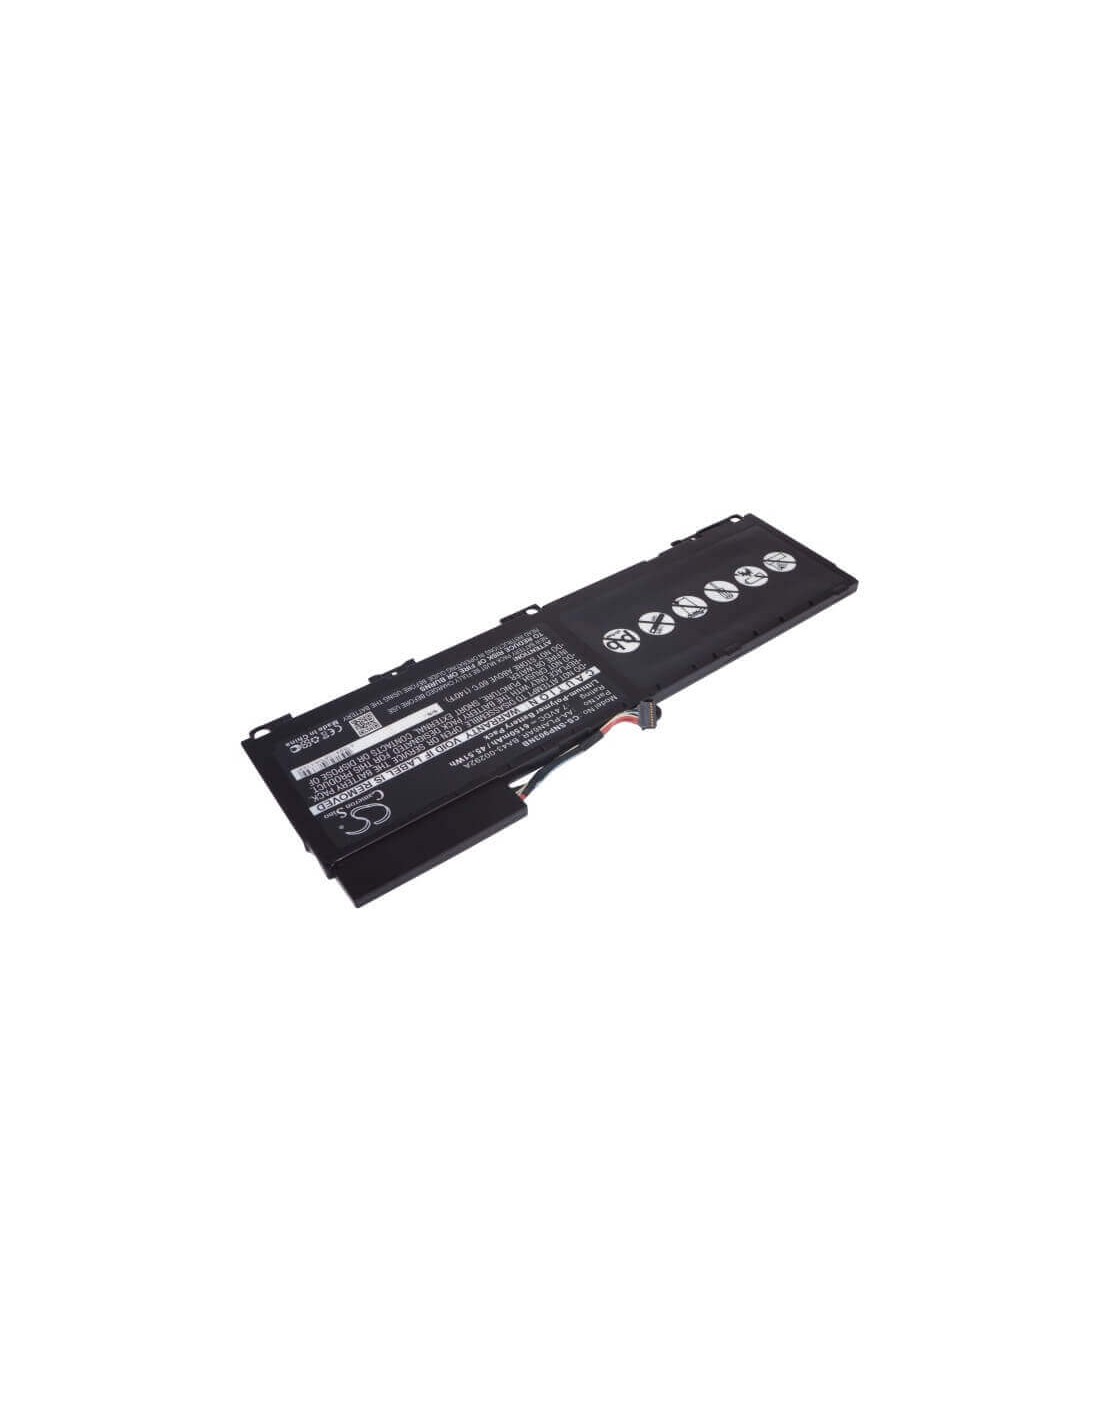 Battery for Samsung Np900x3a, 900x3a-a01, 900x3a-01it 7.4V, - 38.48Wh